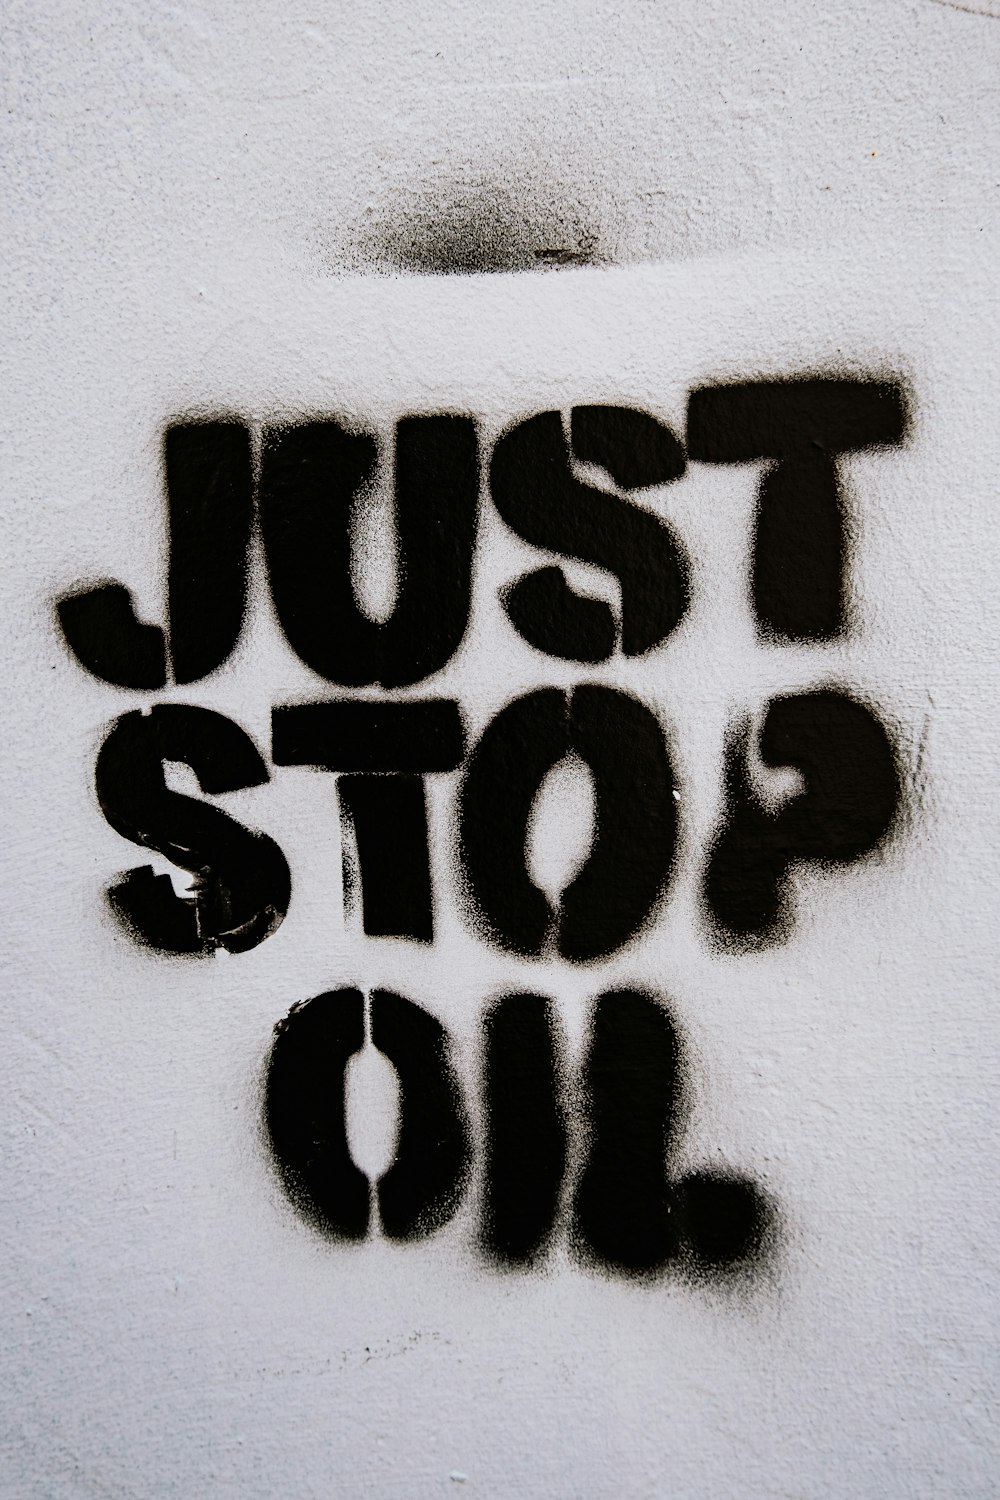 ein besprühtes Schild mit der Aufschrift "Öl einfach stoppen"